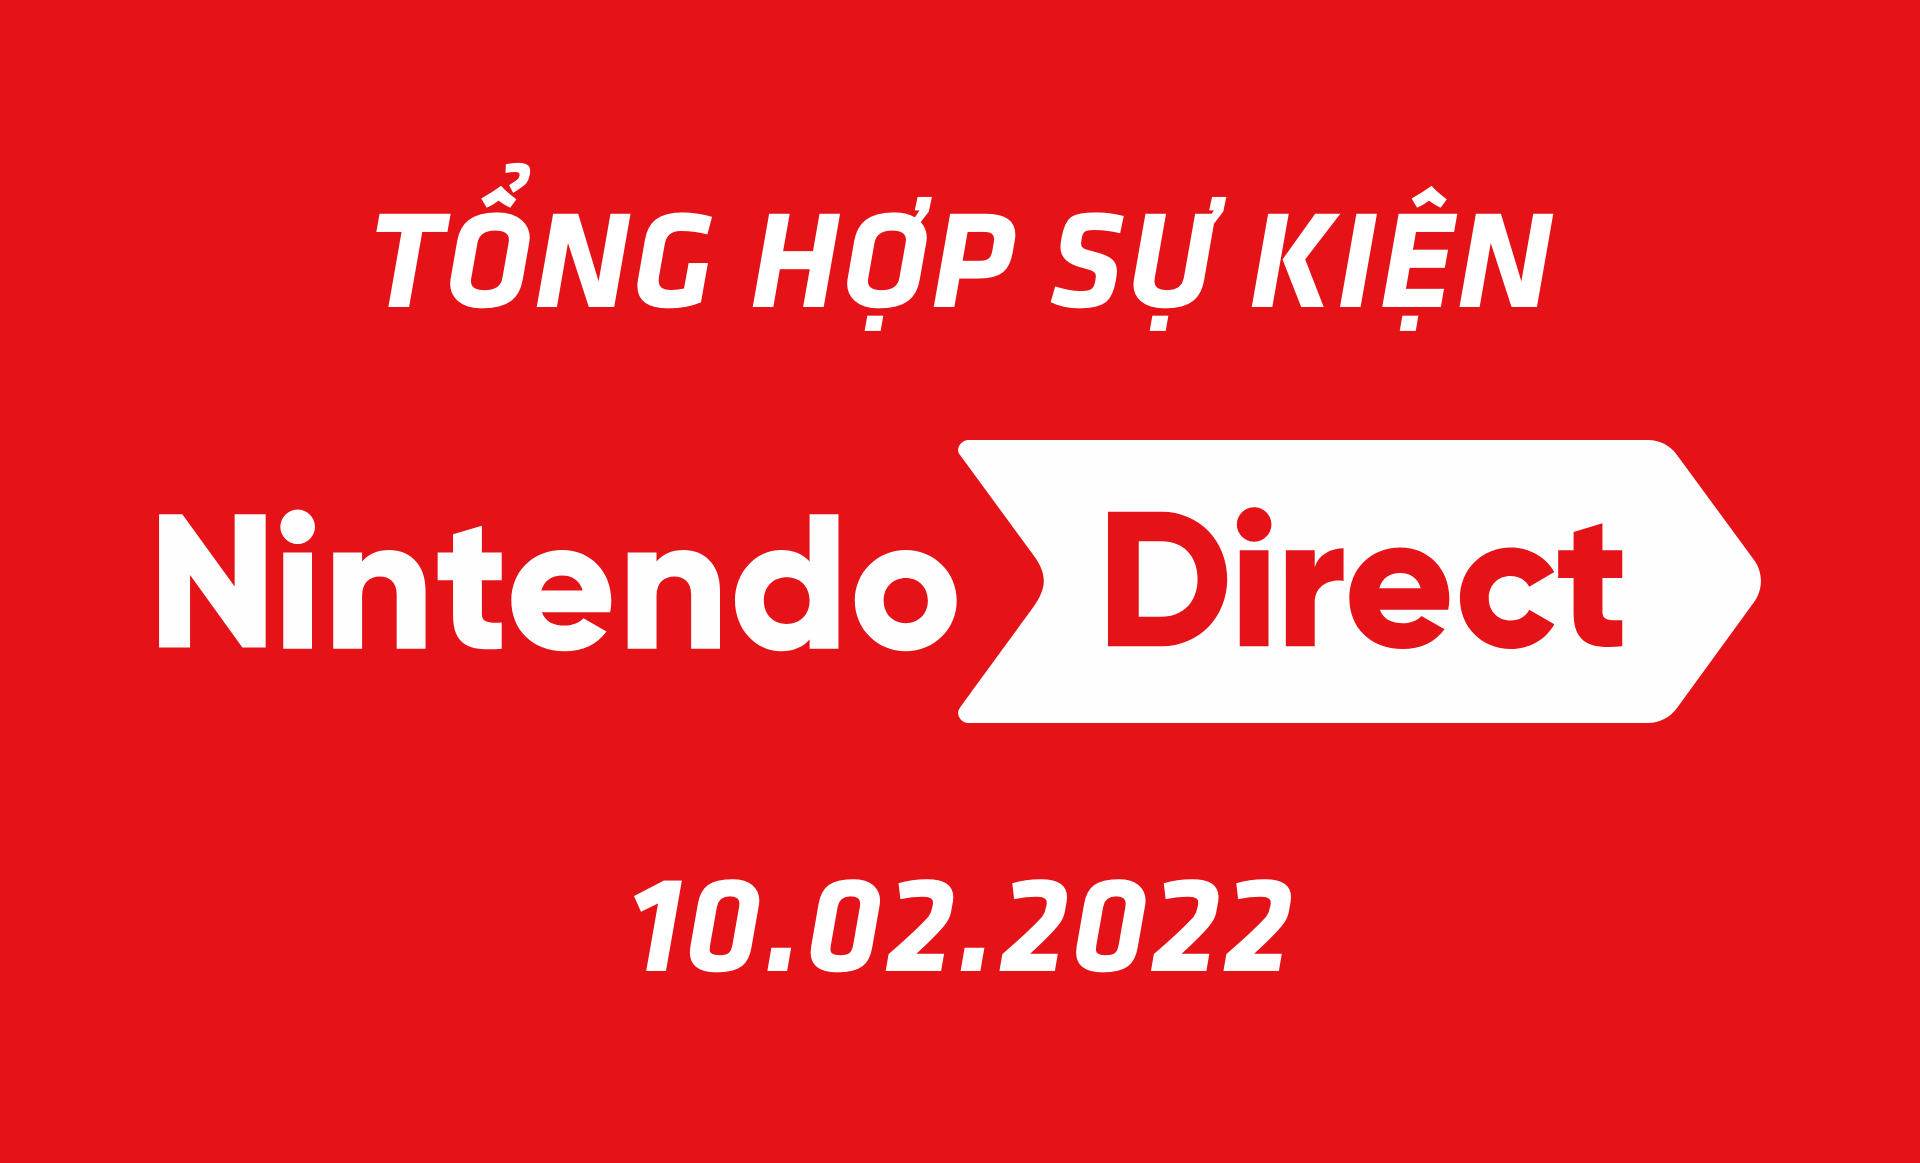 Tổng hợp sự kiện Nintendo Direct 10.02.2022